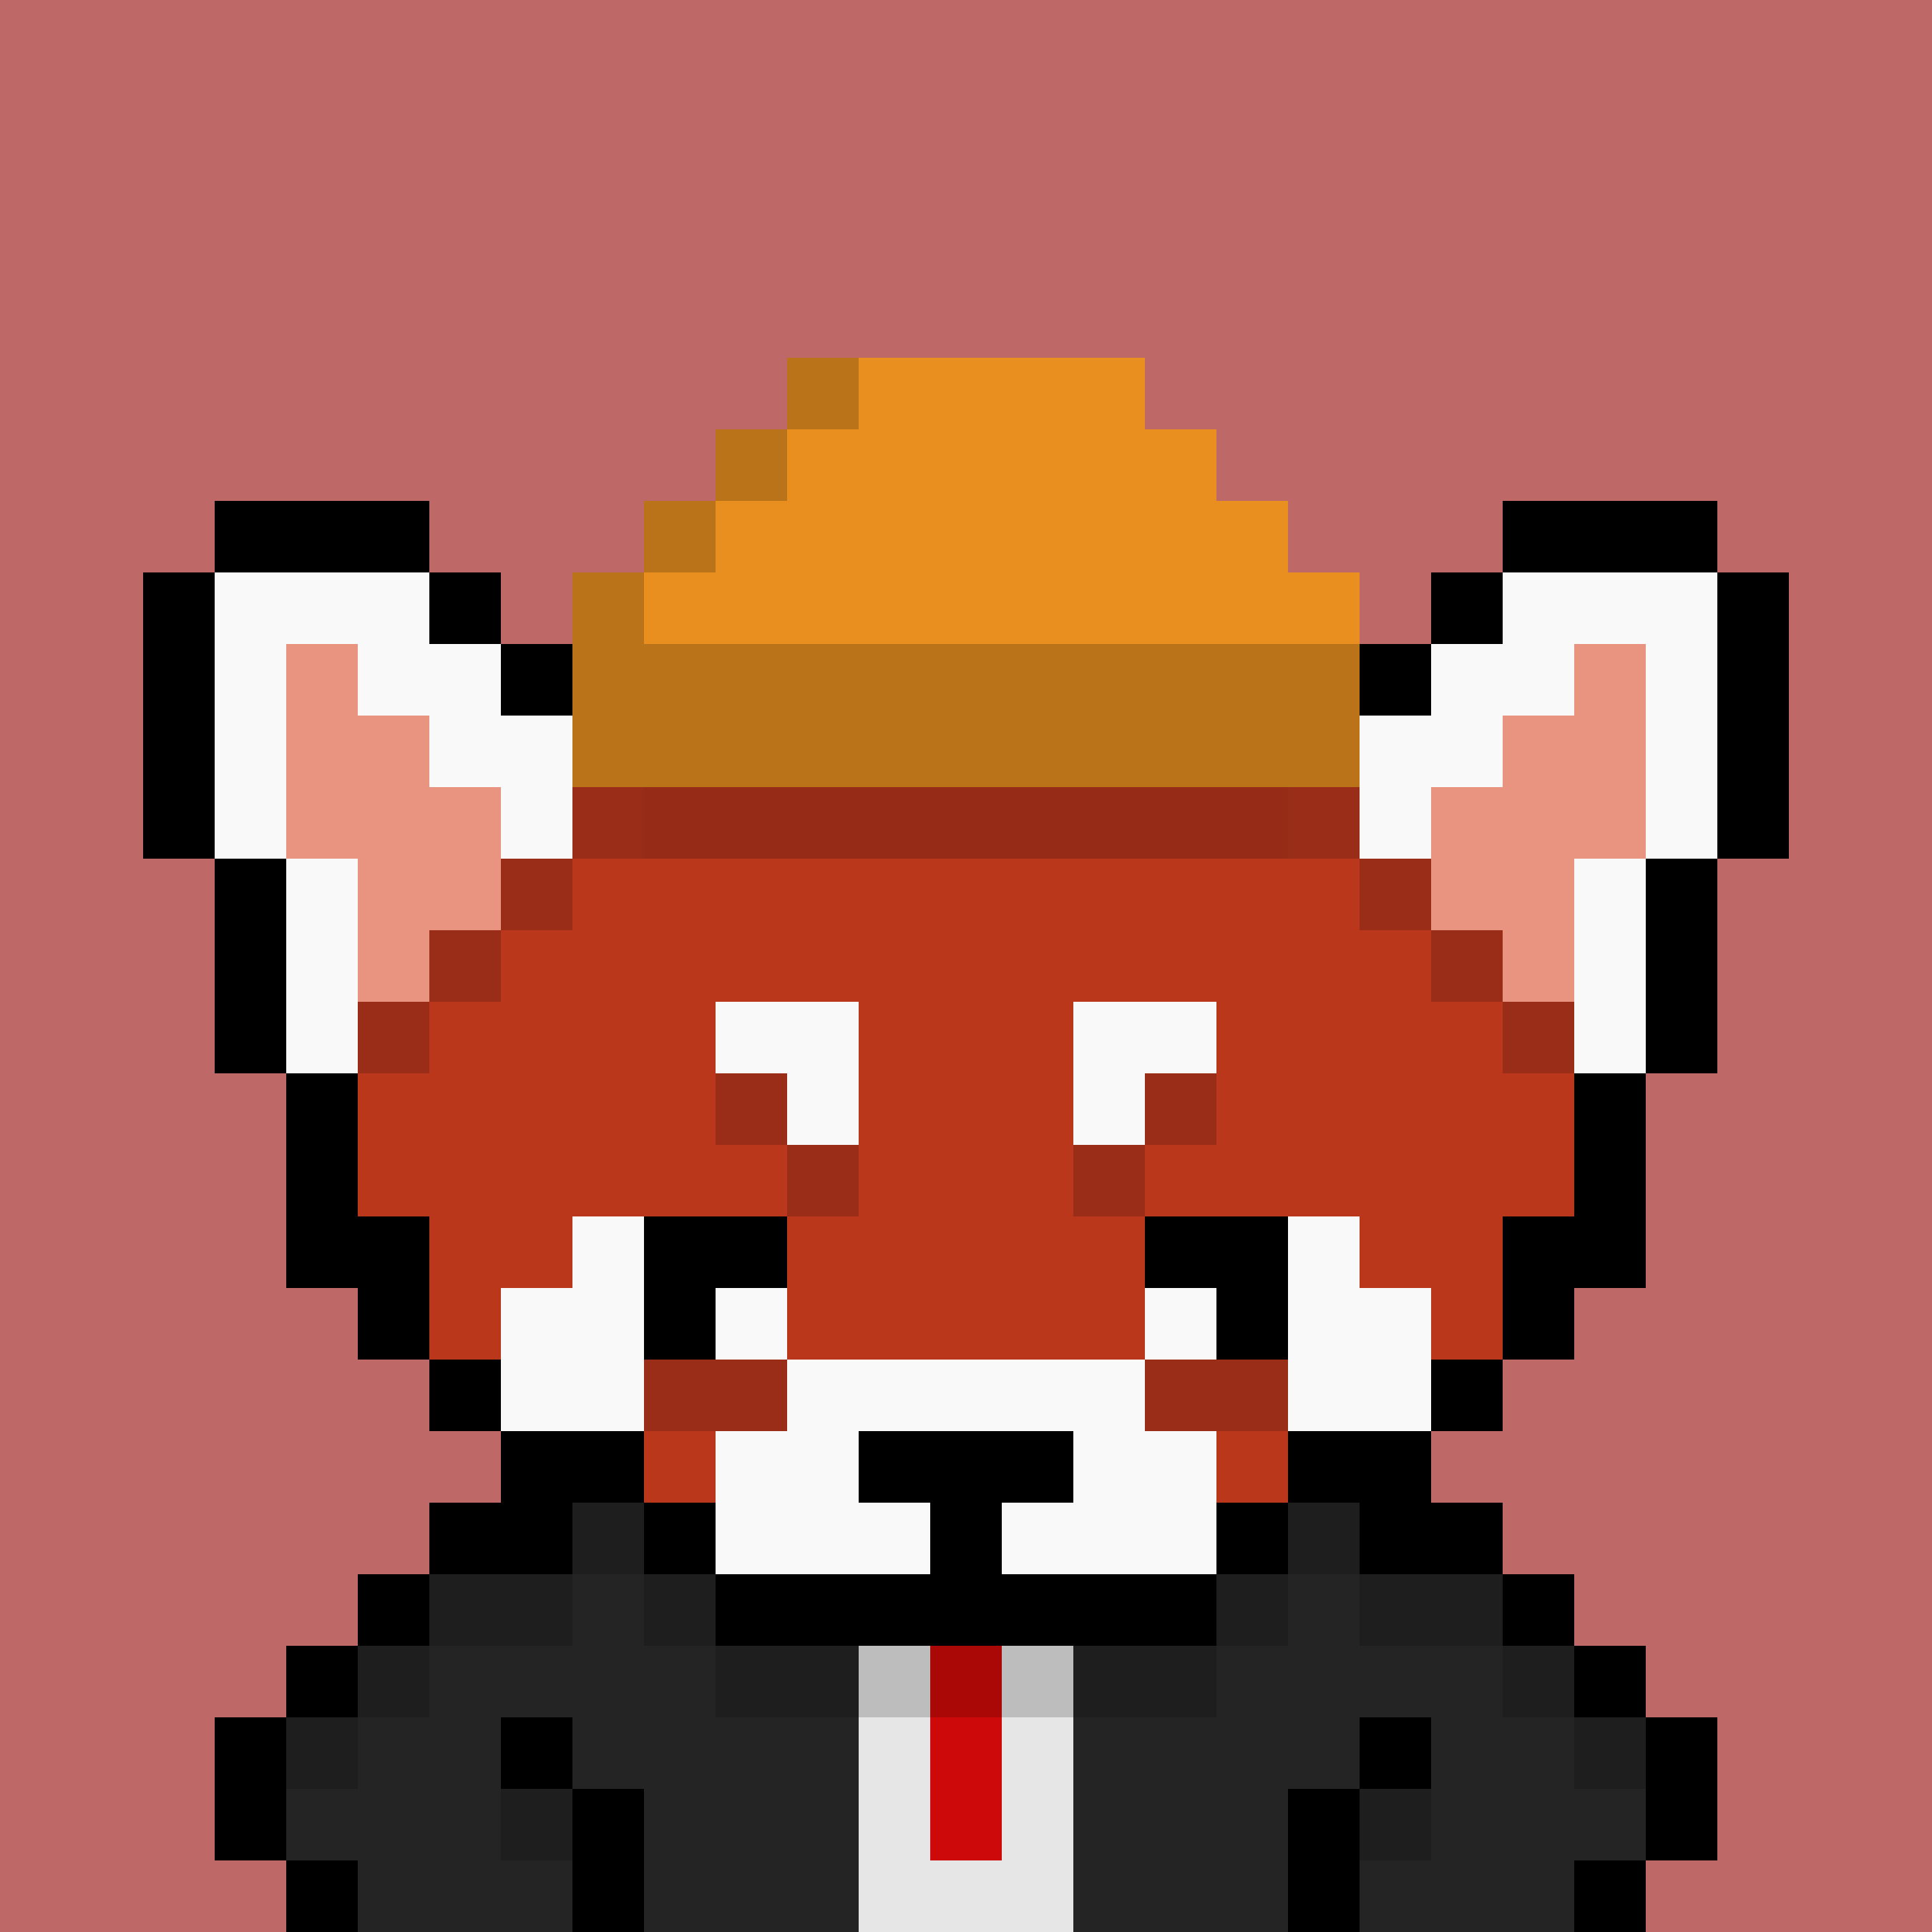 Red Panda #615